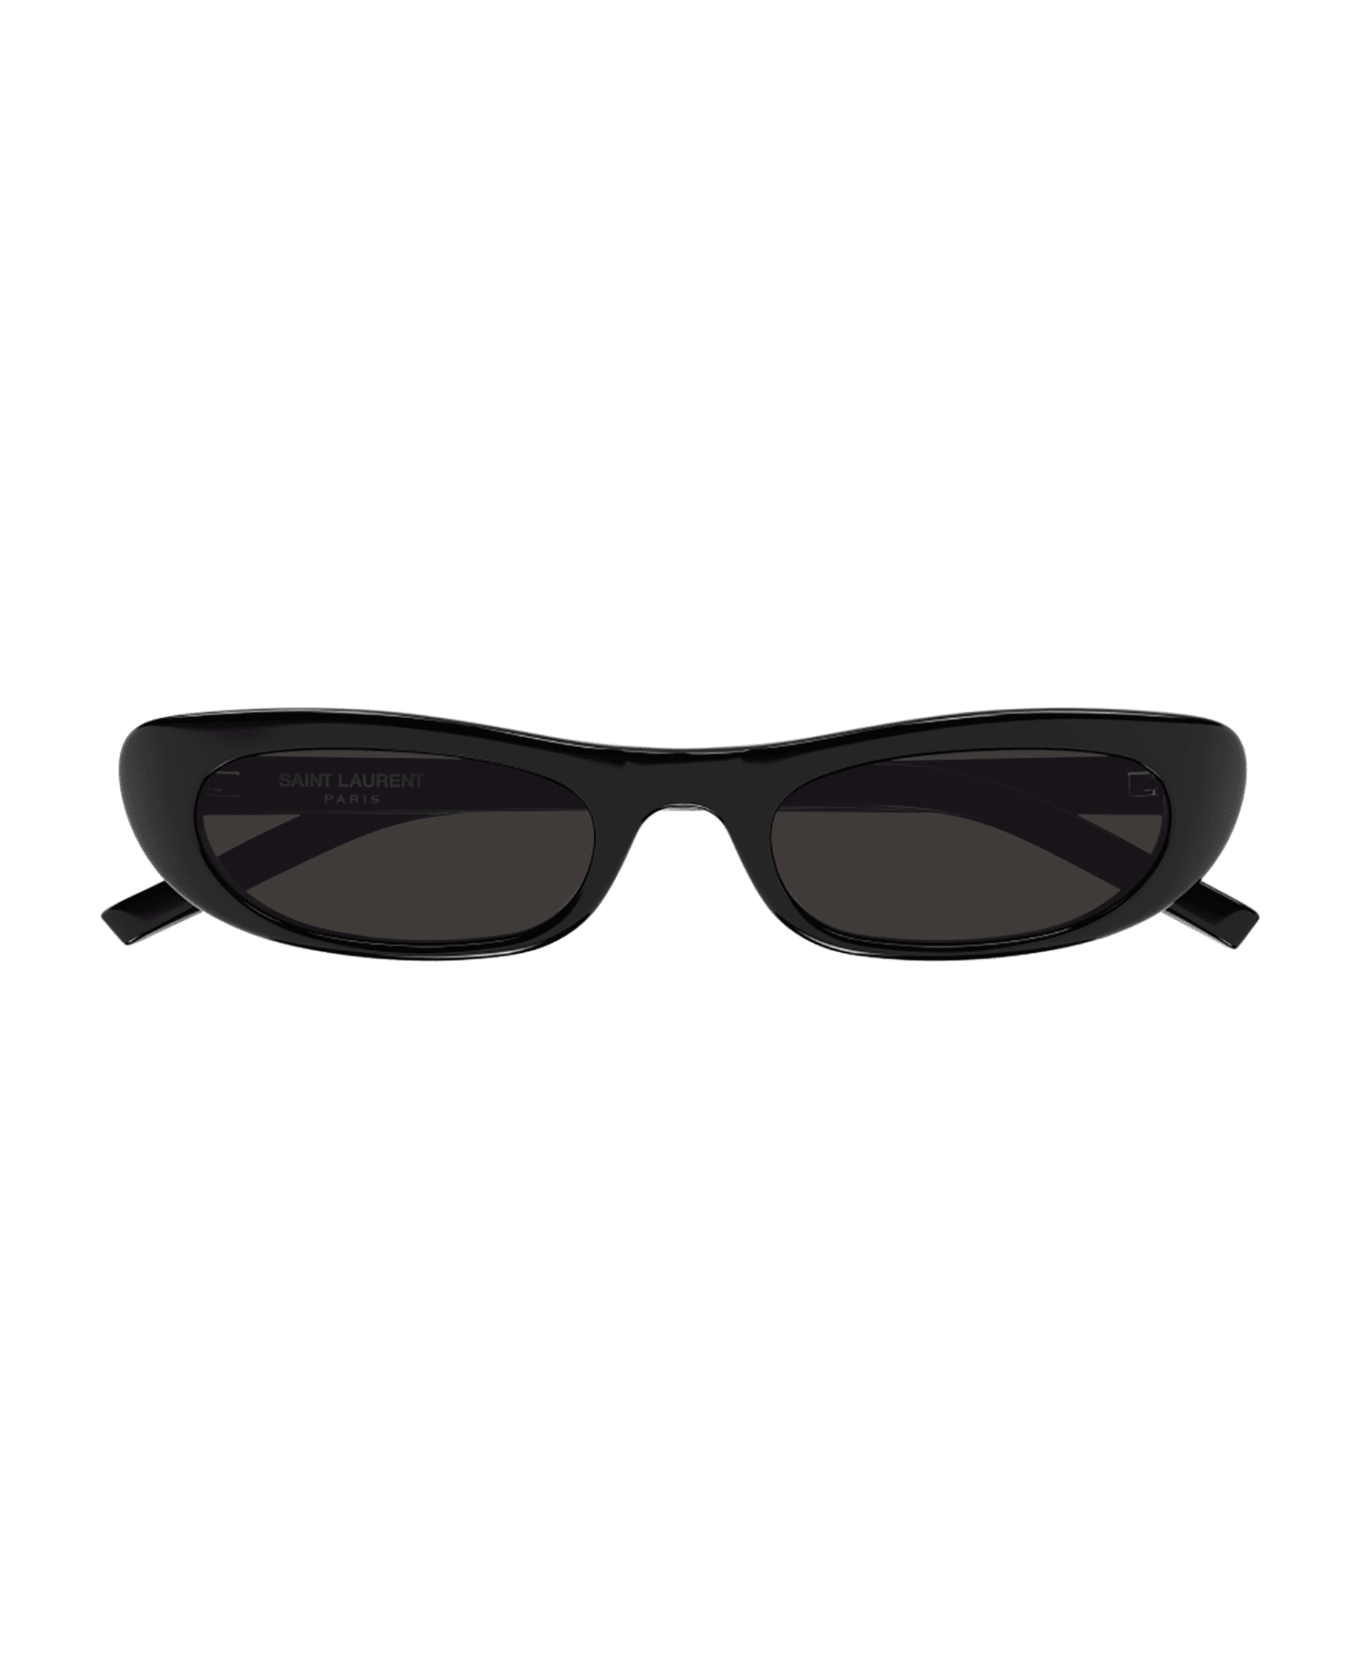 Saint Laurent Eyewear 1e5j4id0a - 001 black black black サングラス